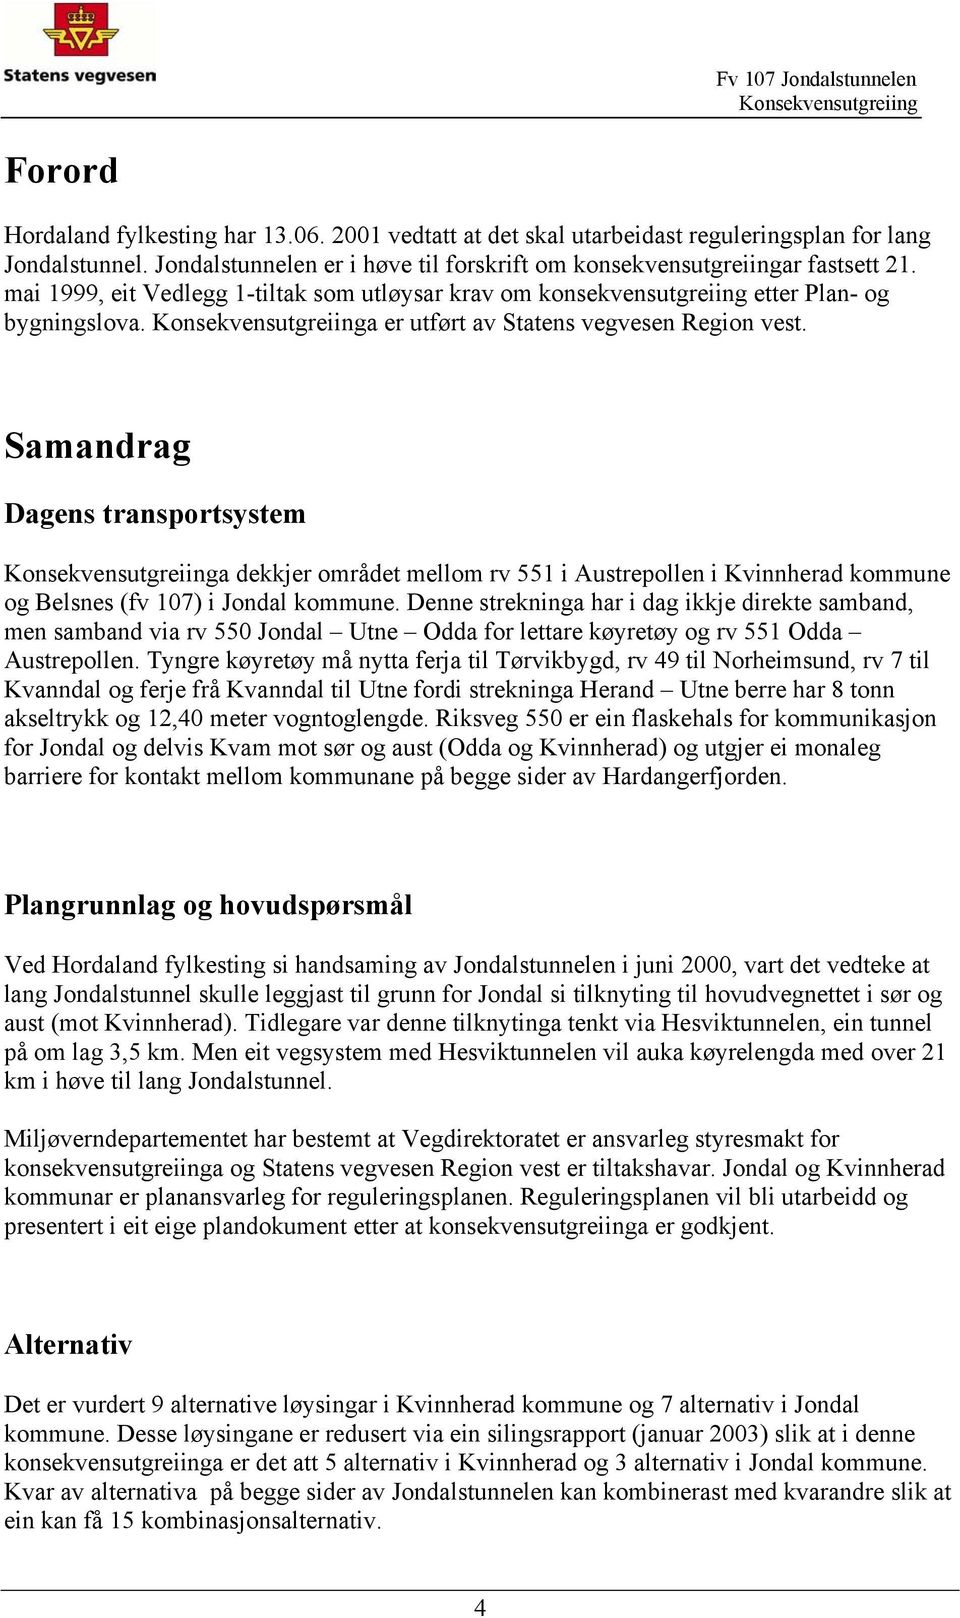 Samandrag Dagens transportsystem a dekkjer området mellom rv 551 i Austrepollen i Kvinnherad kommune og Belsnes (fv 107) i Jondal kommune.